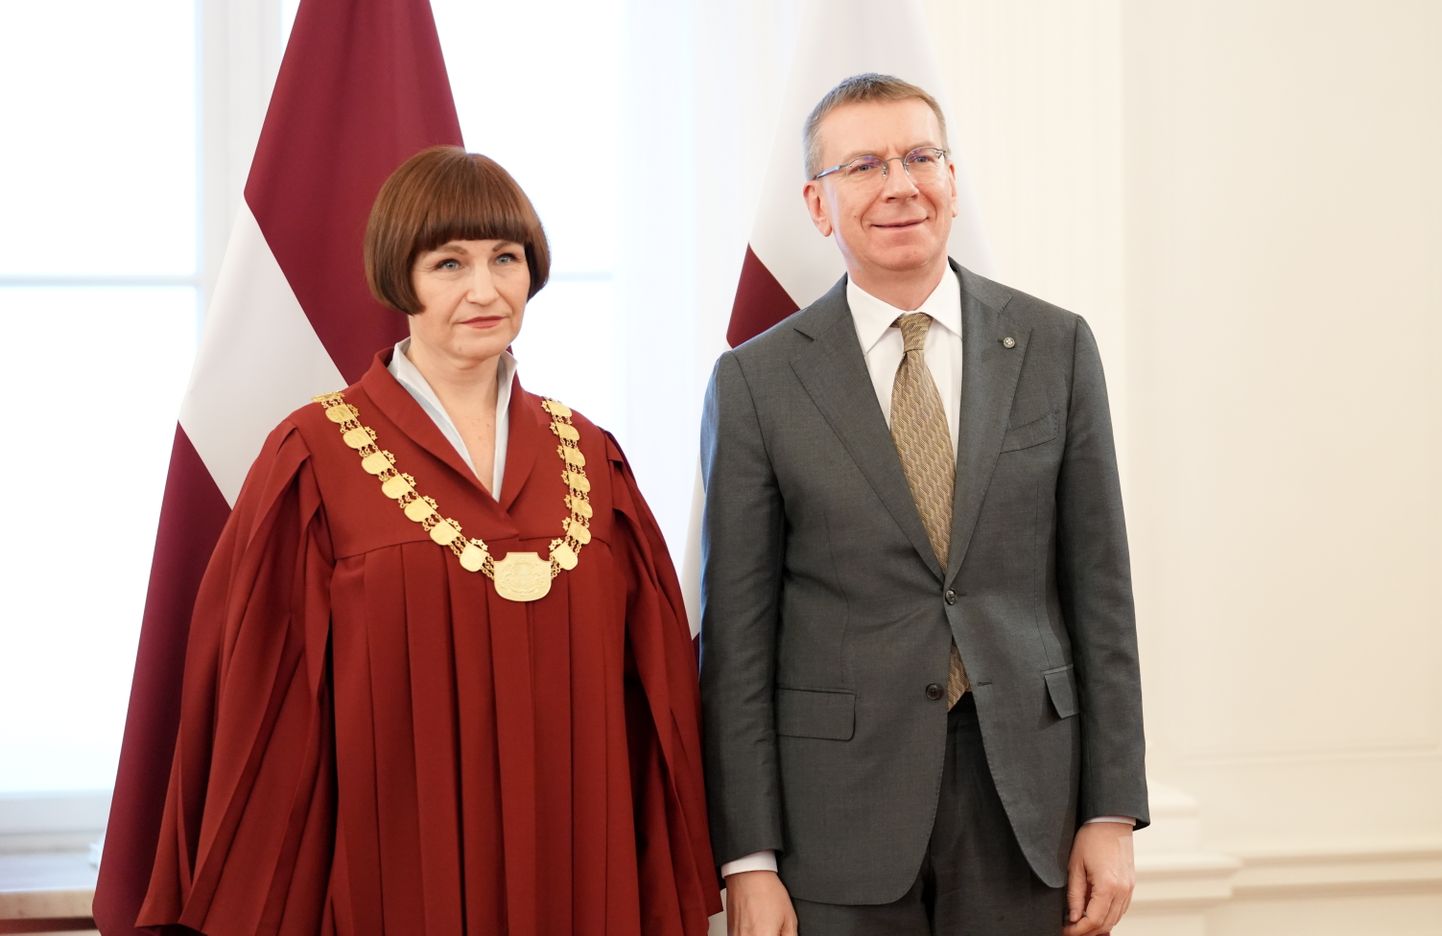 Valsts prezidents Edgars Rinkēvičs un Augstākās tiesas tiesnese Sanita Osipova piedalās svinīgajā zvēresta došanas ceremonijā Rīgas pilī.